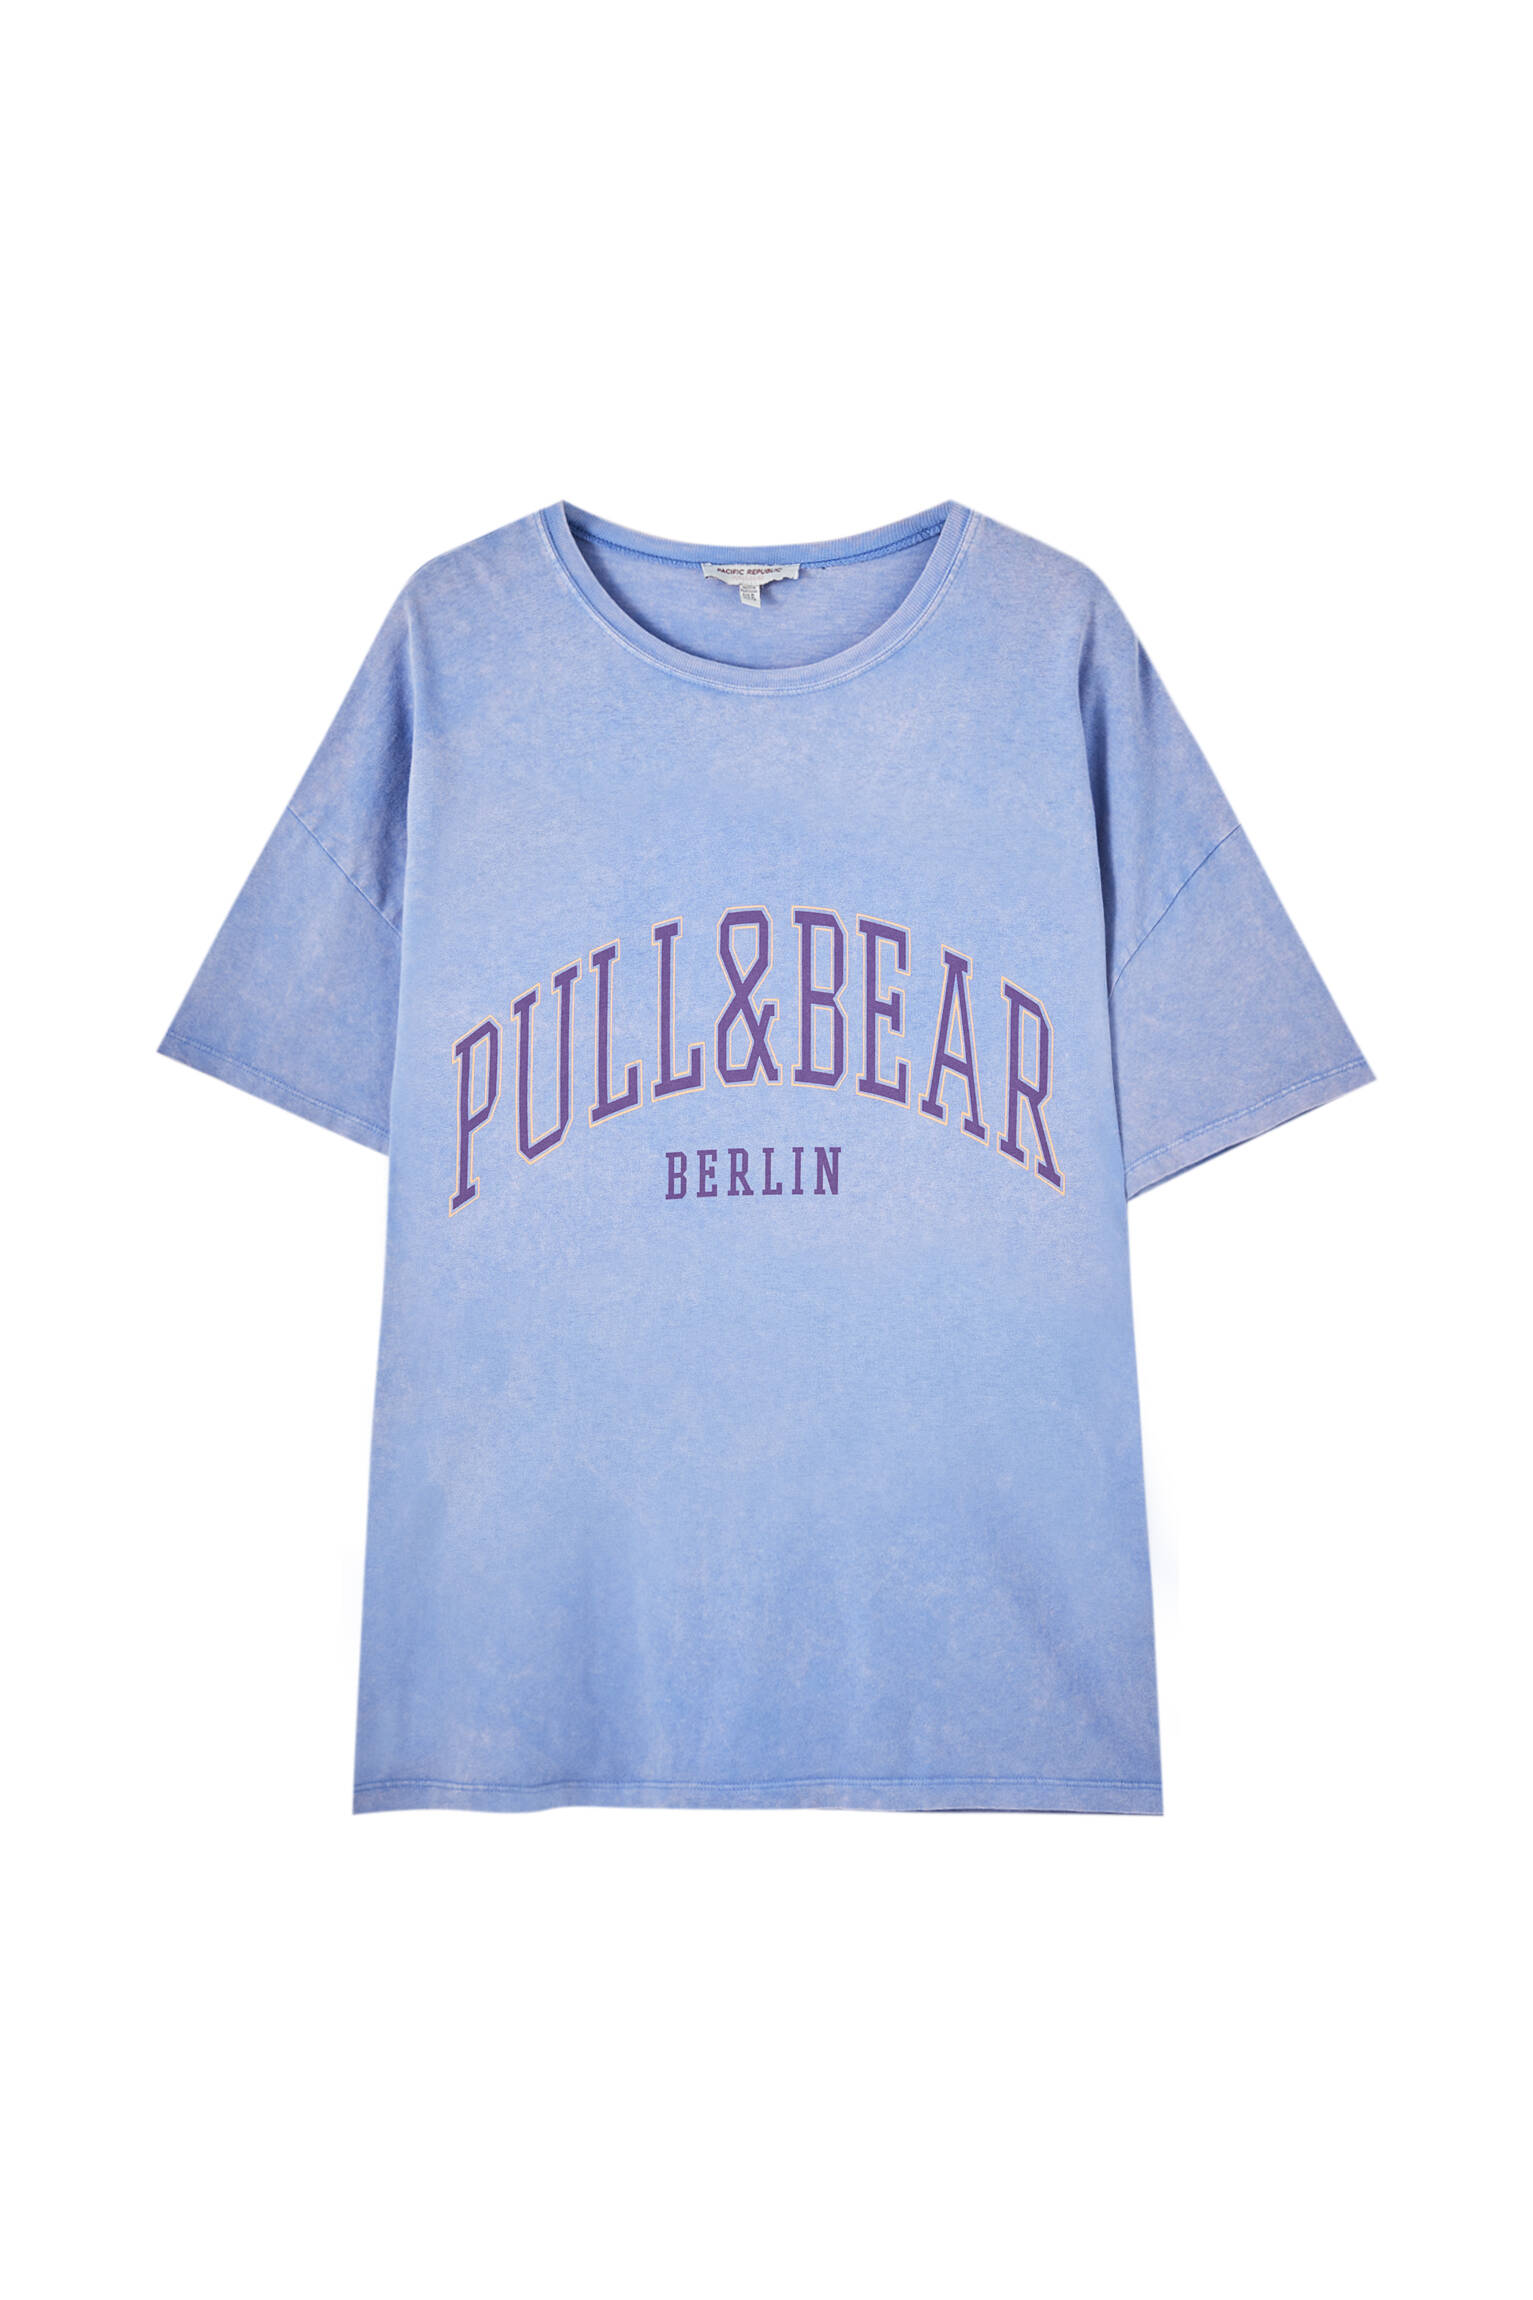 Pull&bear Femme T-shirt 100 % Coton à Col Rond Et Manches Courtes, Avec Logo Pull&bear Et Inscription Berlin Contrastante Sur La Poitrine. Indigo DÉlavÉ Xl